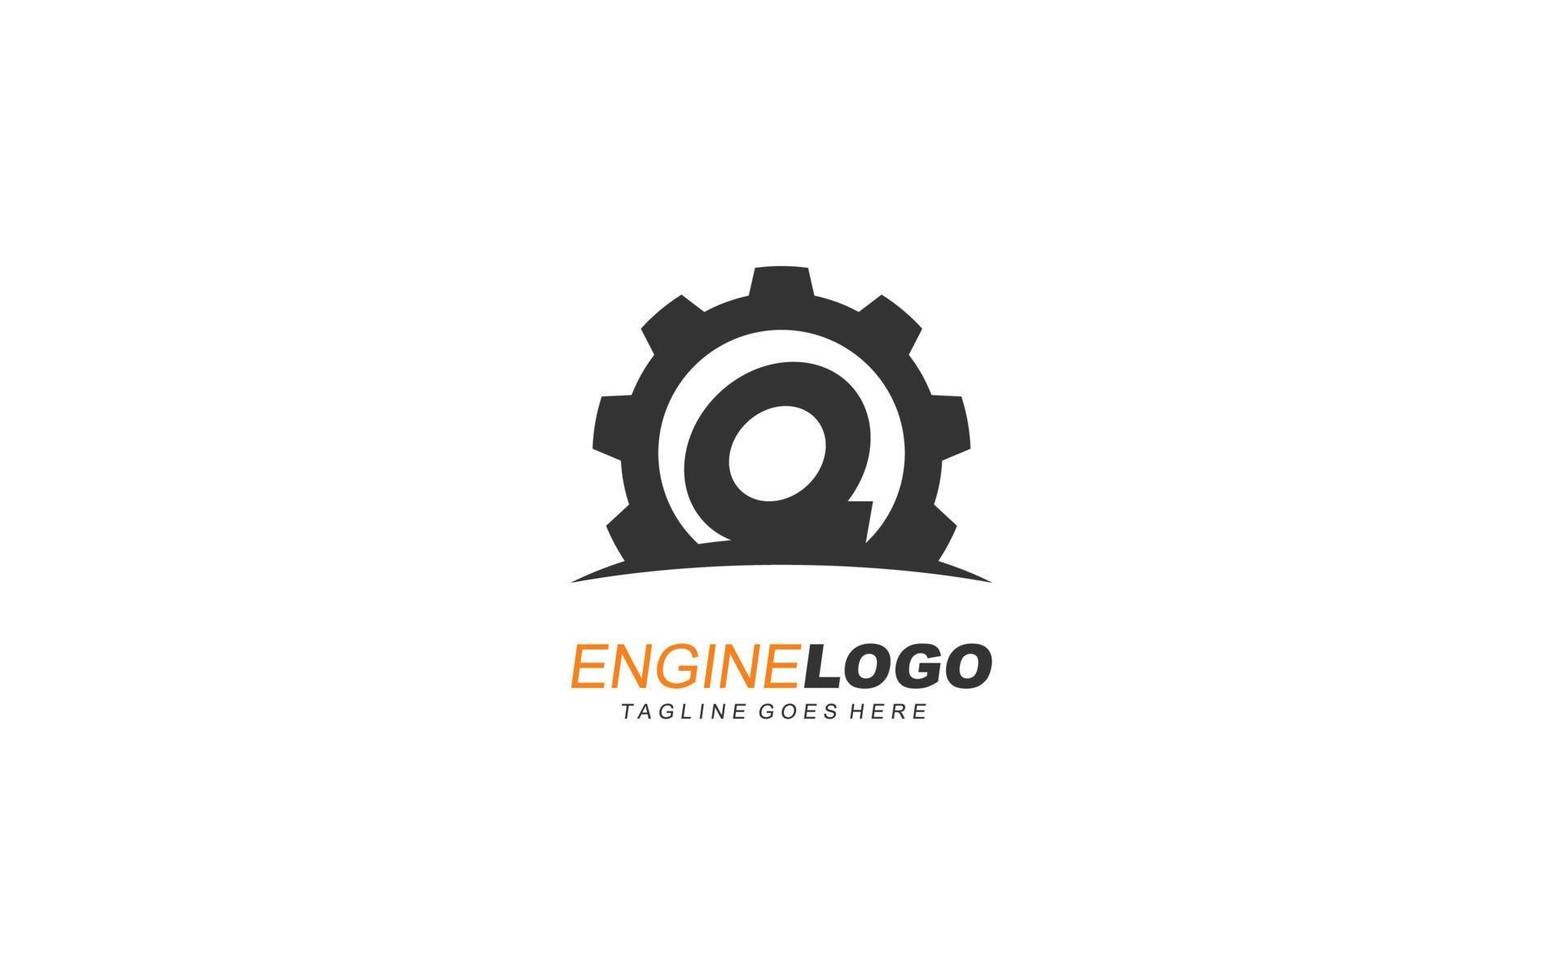 engranaje del logotipo de q para la identidad. ilustración de vector de plantilla industrial para su marca.